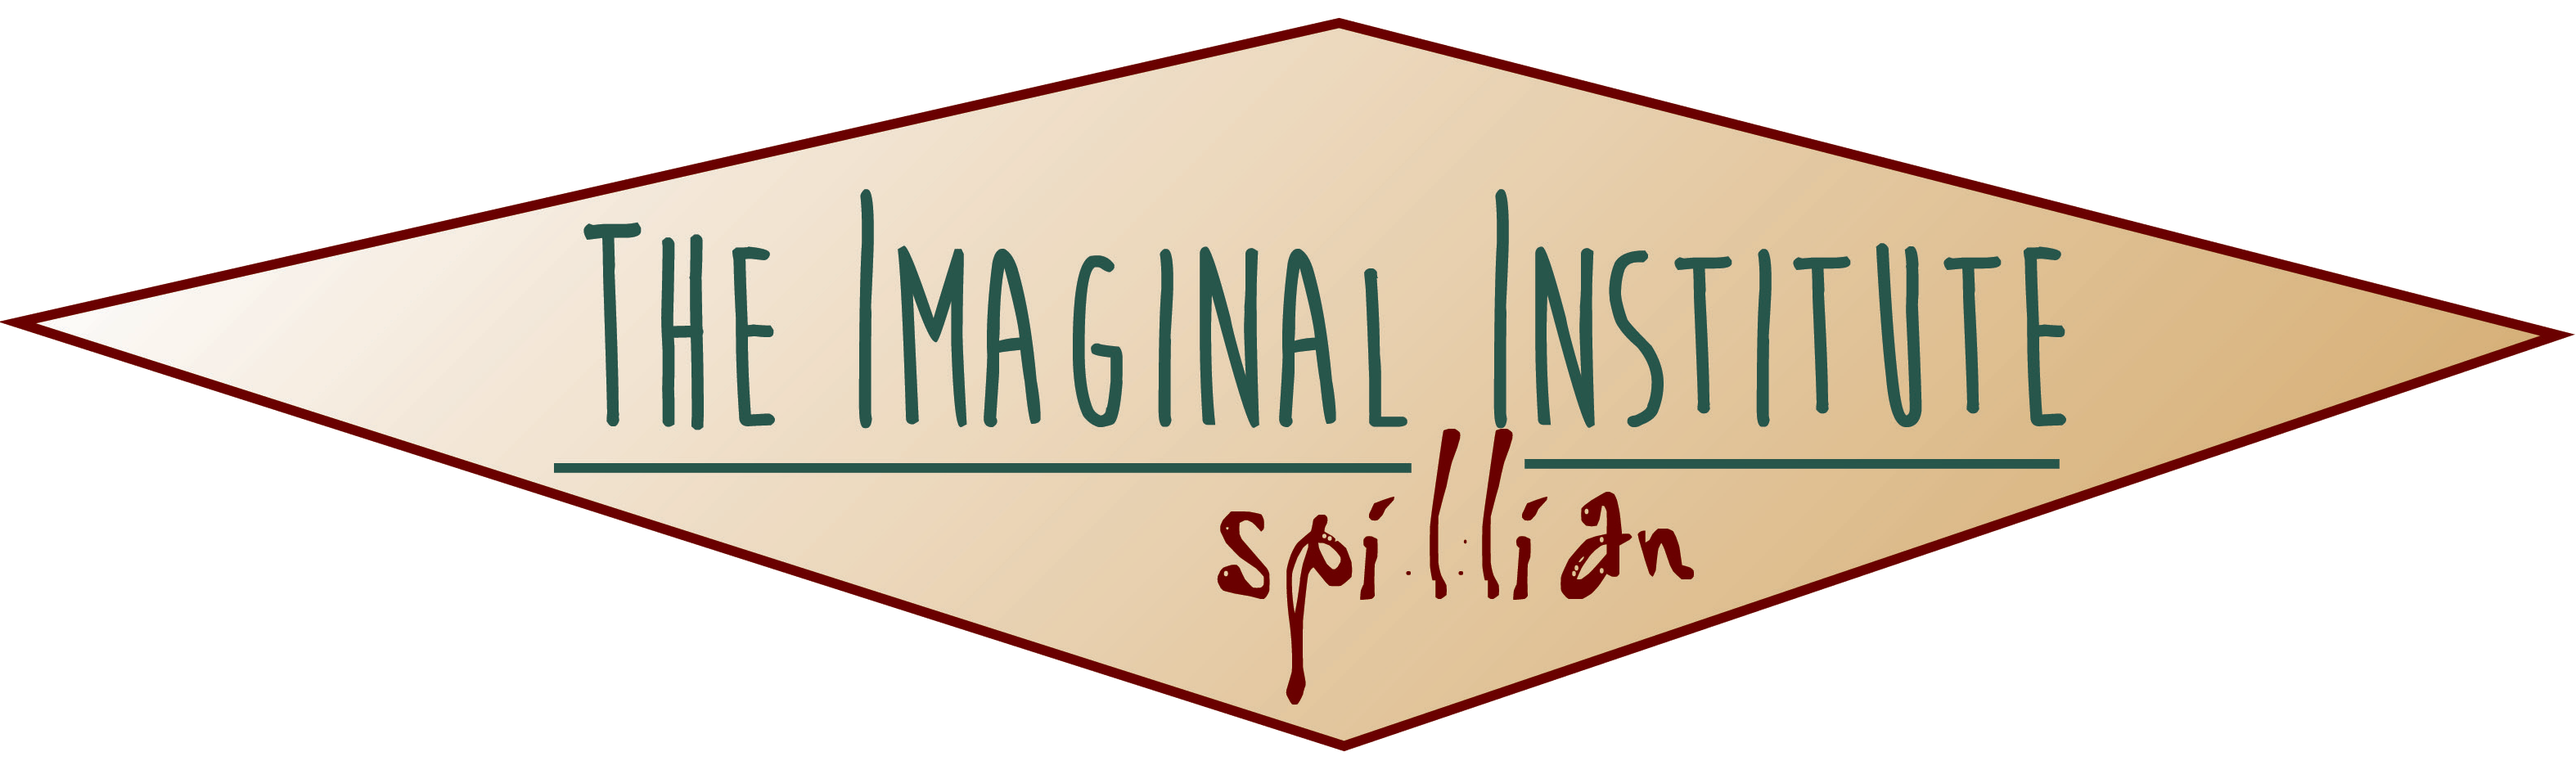 The Imaginal Institute